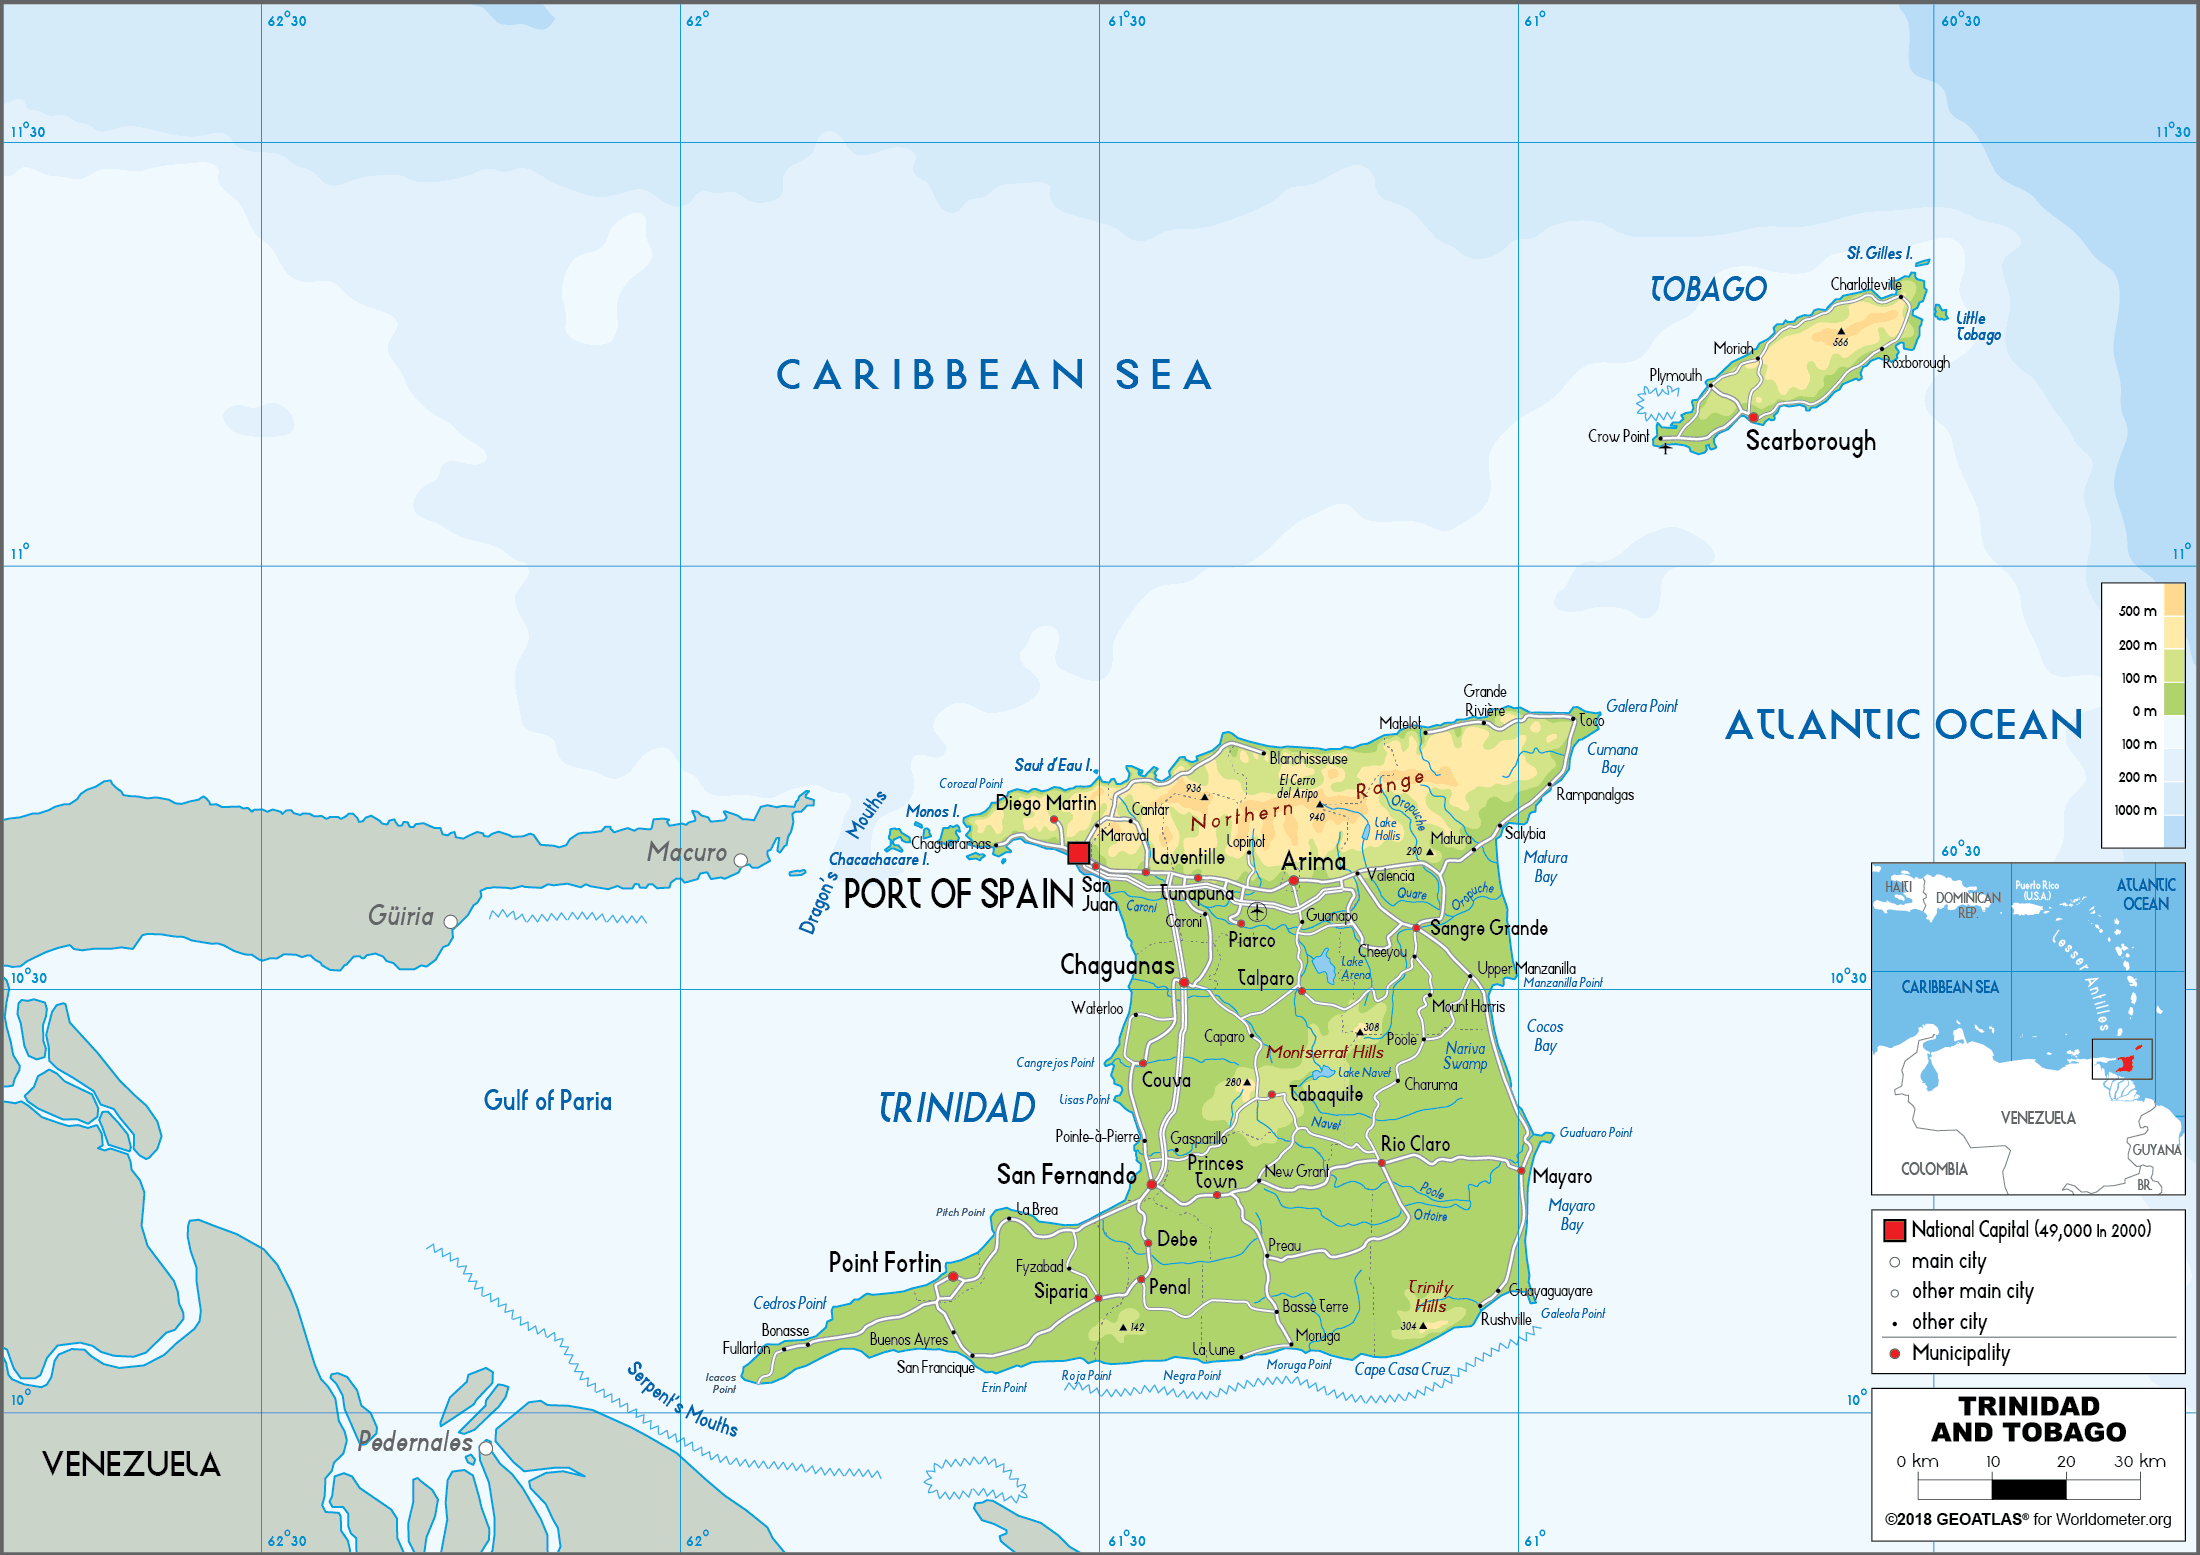 23090306 3 trinidad and tobago map